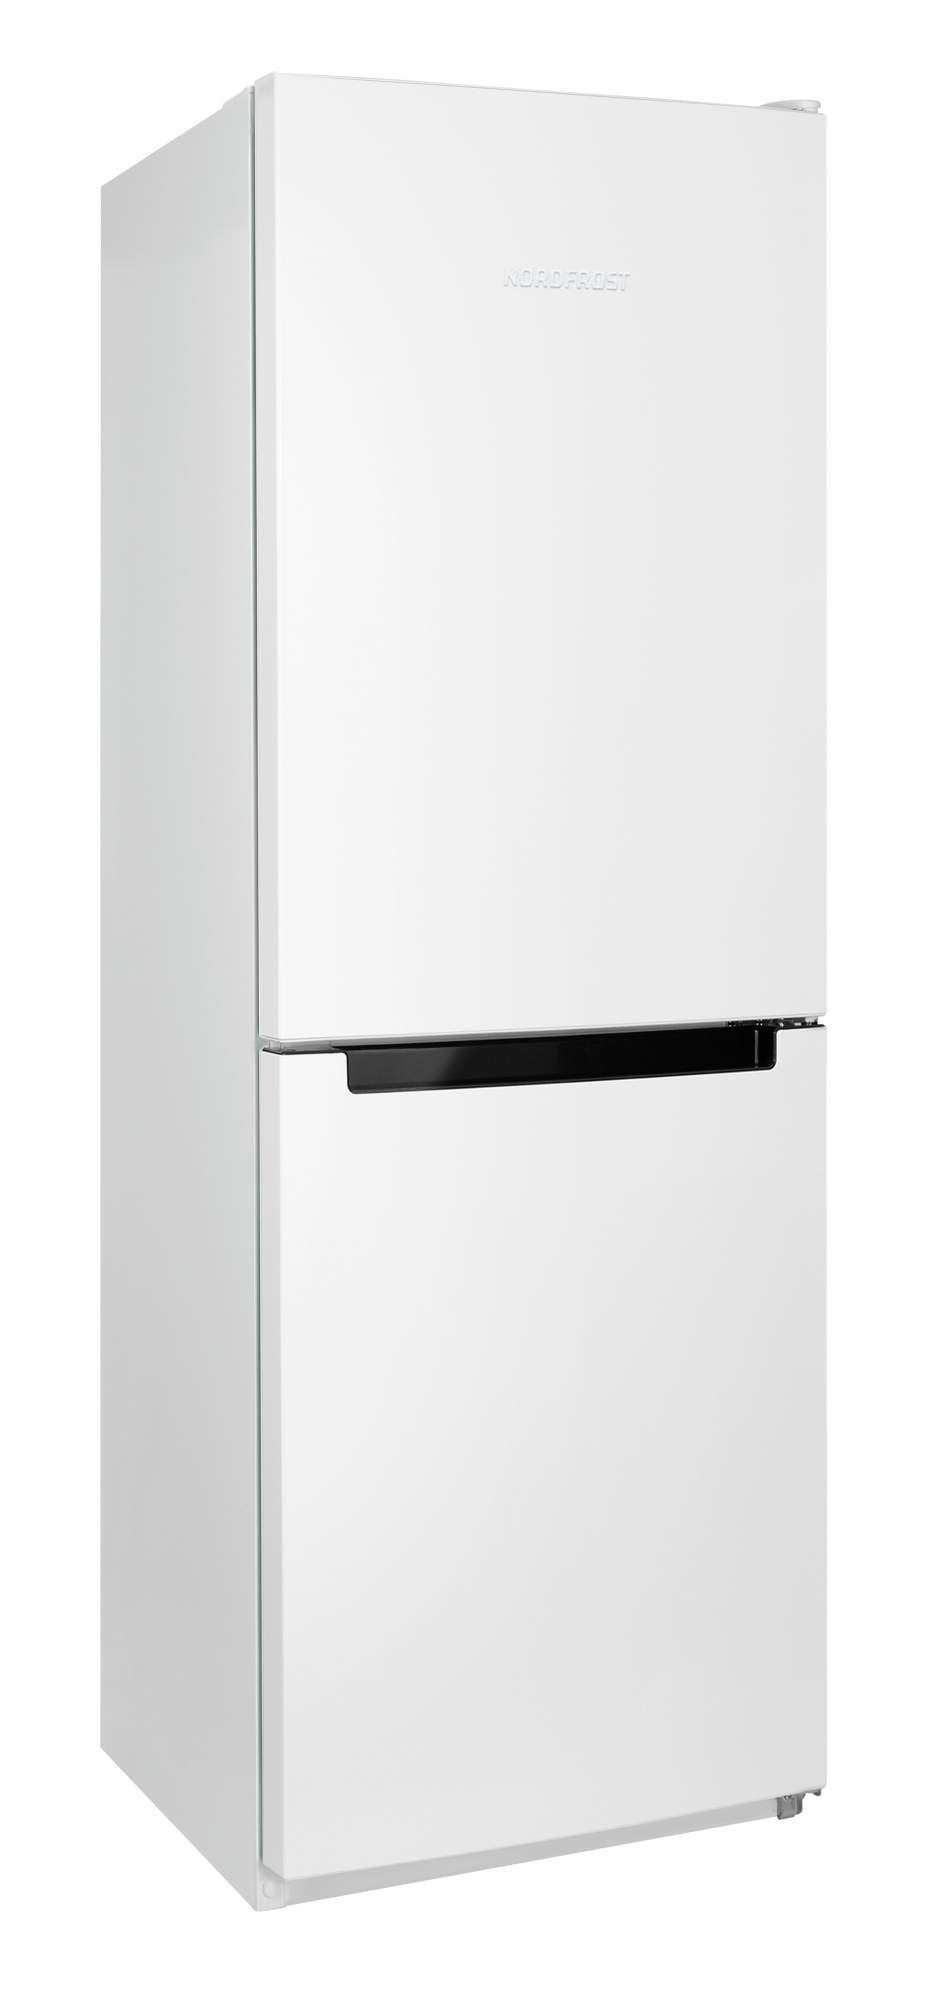 Холодильник NordFrost NRB 131 W белый - купить в HOLODILNIK.RU (Юг), цена на Мегамаркет